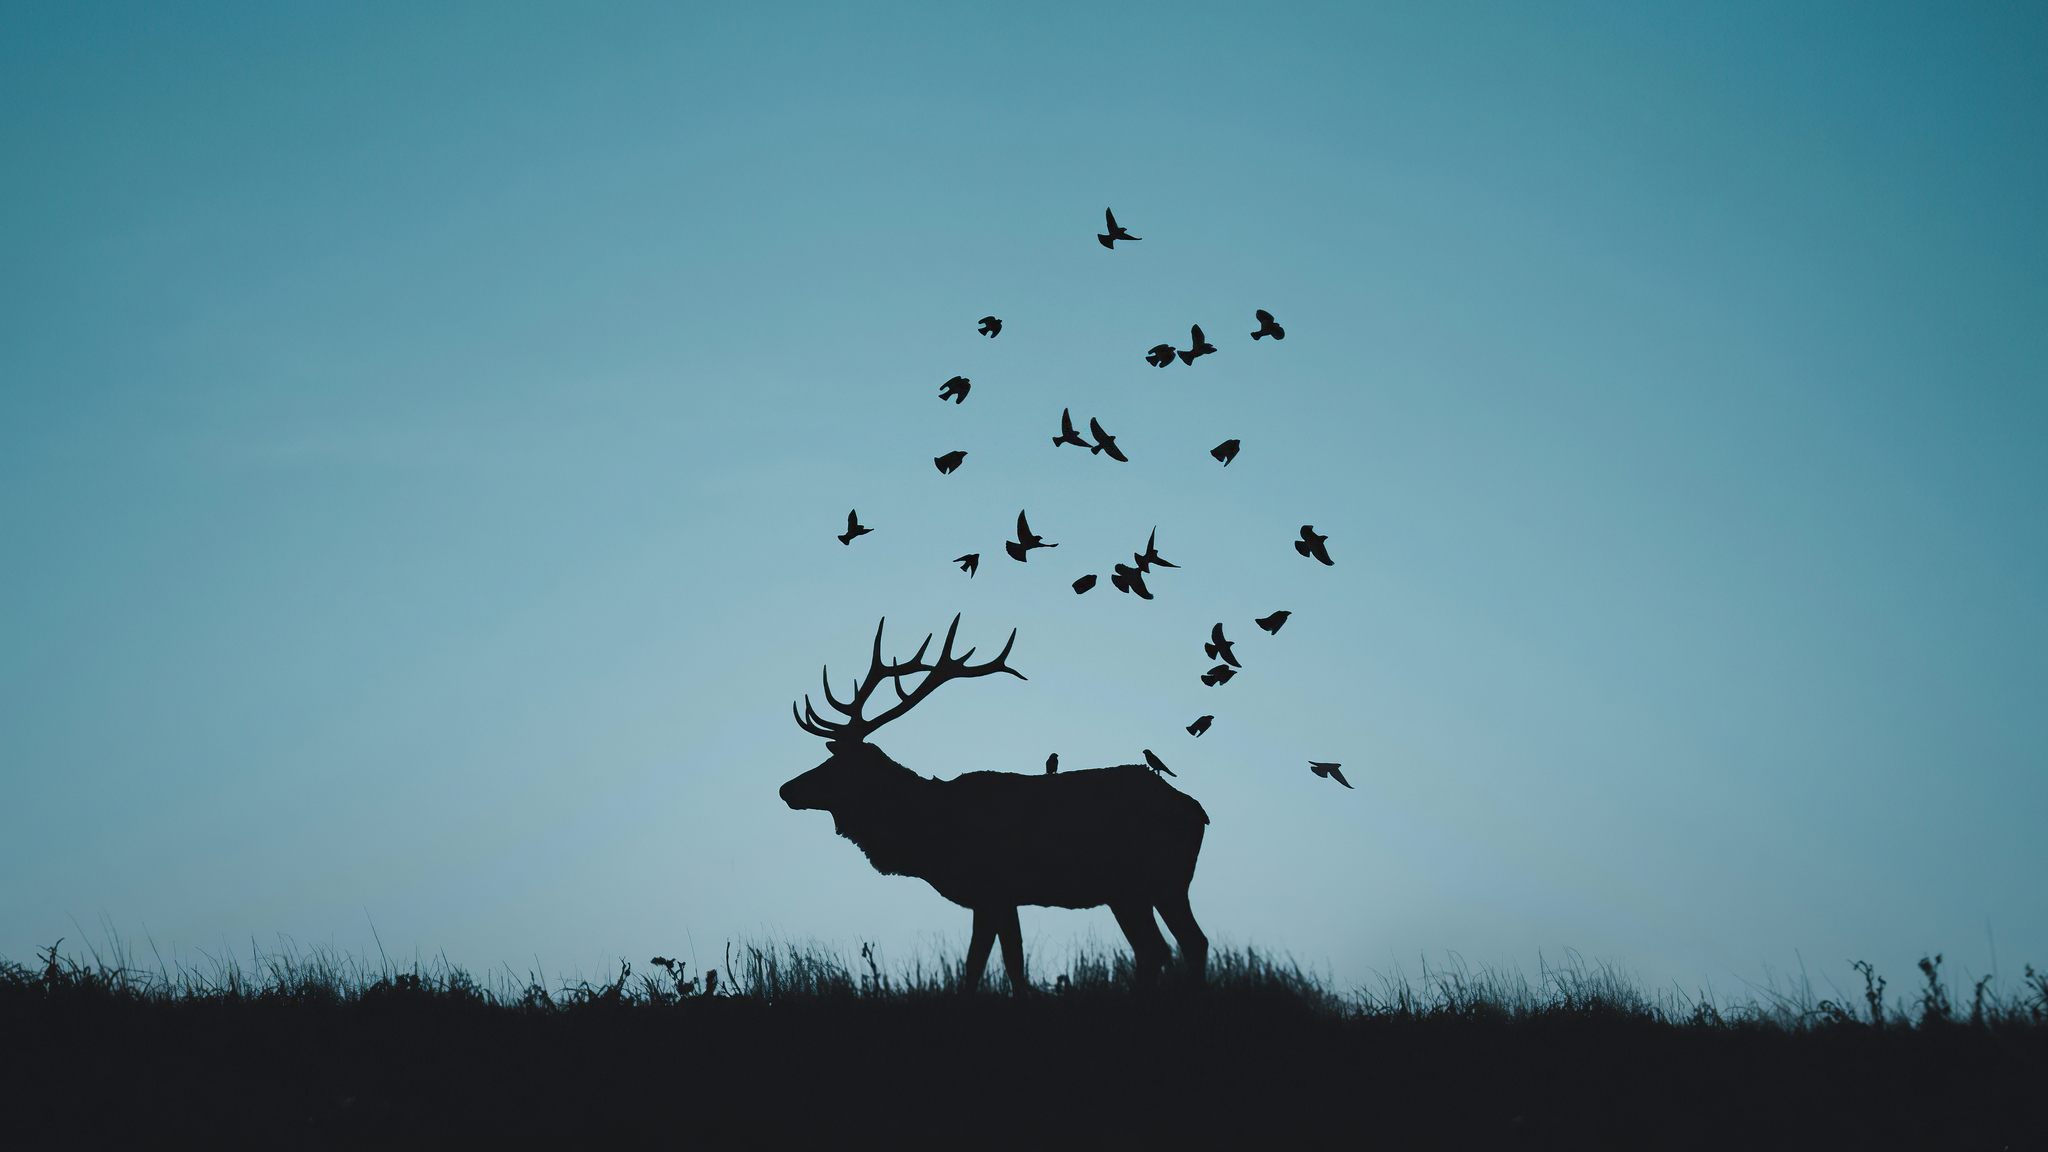 reindeer-minimal-silhouette-r4.jpg